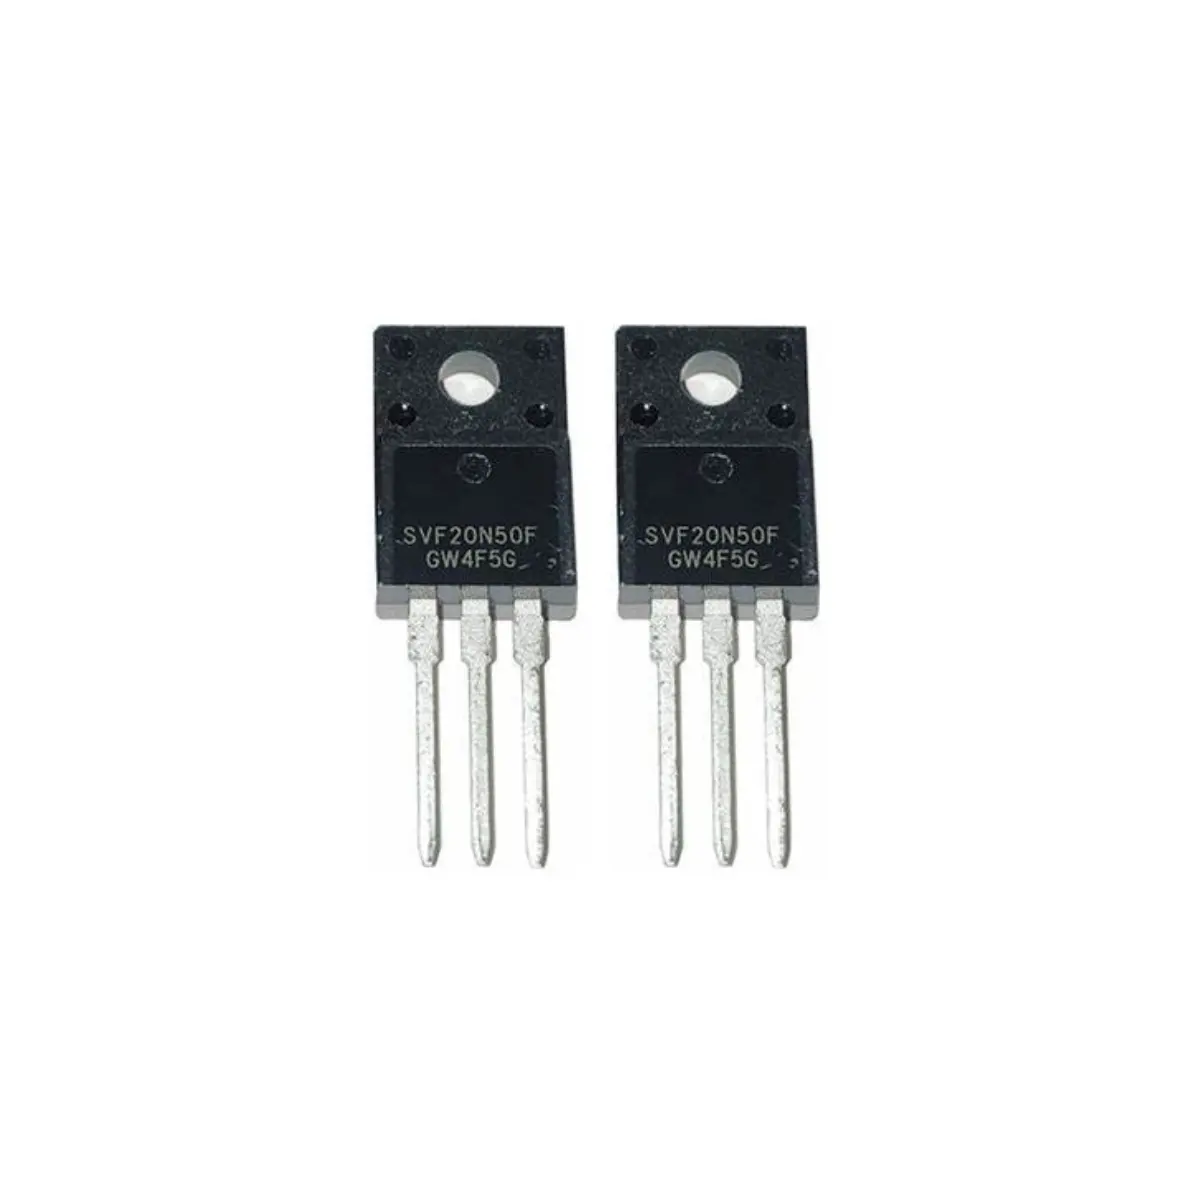 SVF20n50f 20n50e 20N50 transistores de MOSFET de potencia RF para lámpara de xenón y controlador bldc_motor Hay más modelos disponibles